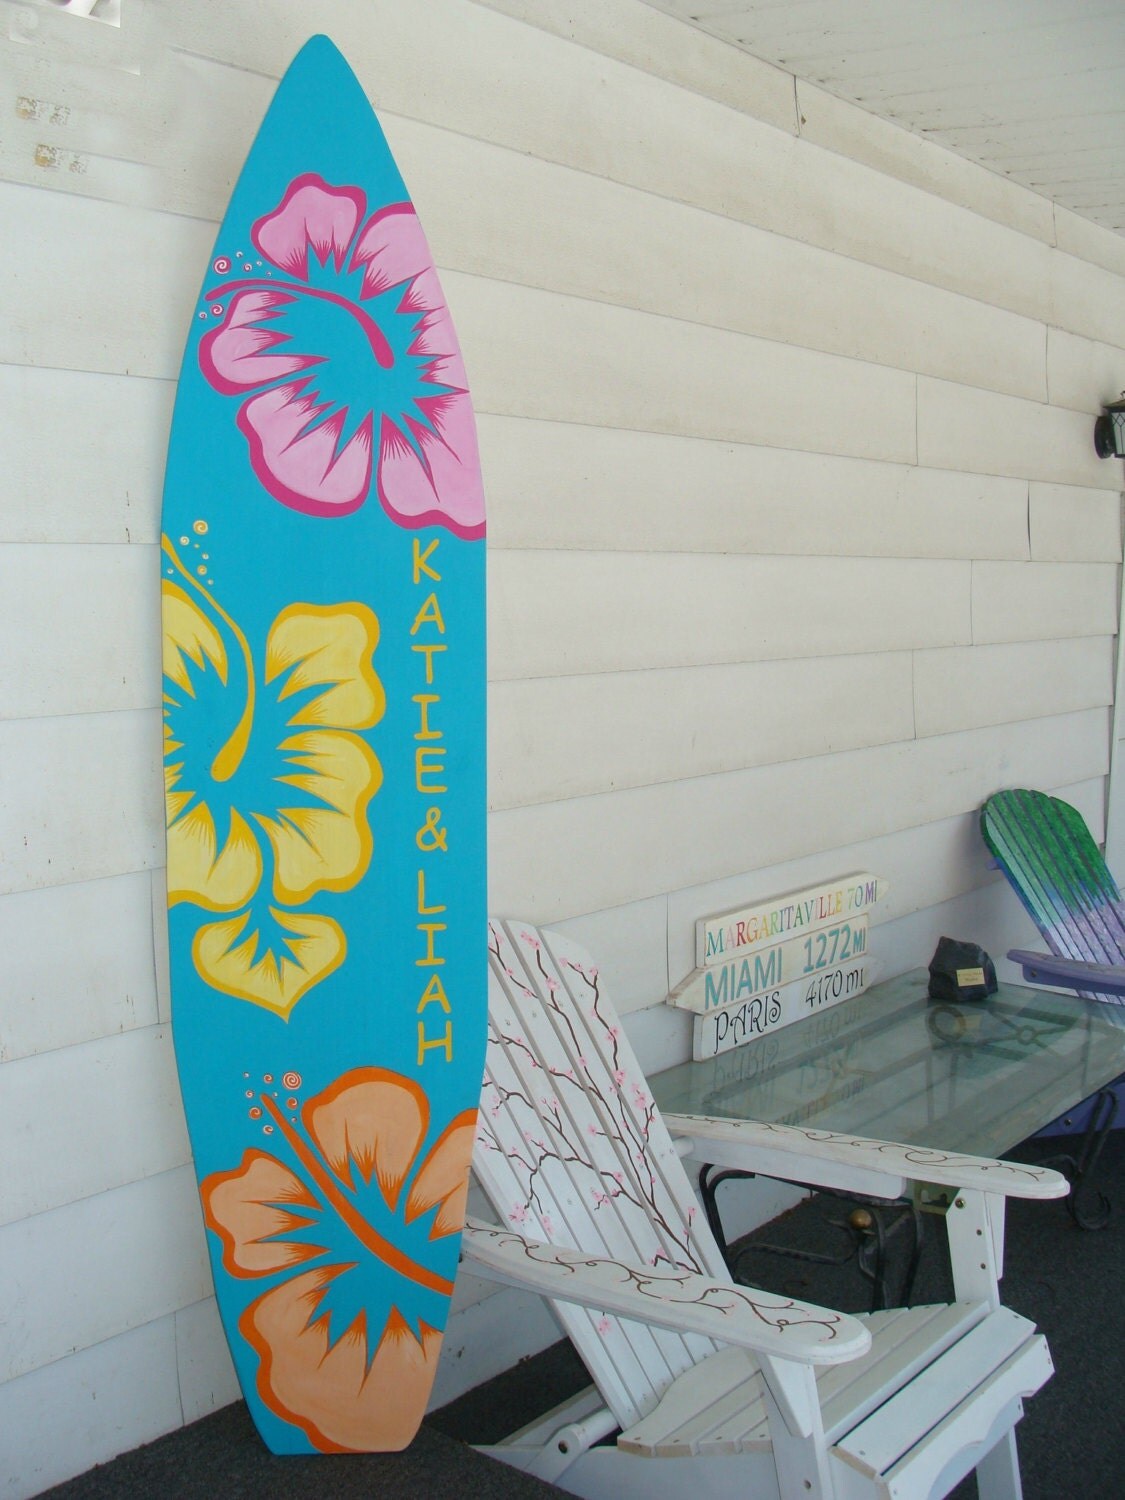 6 Foot Wood Hawaiian Surfboard Wall Art Decor or Headboard